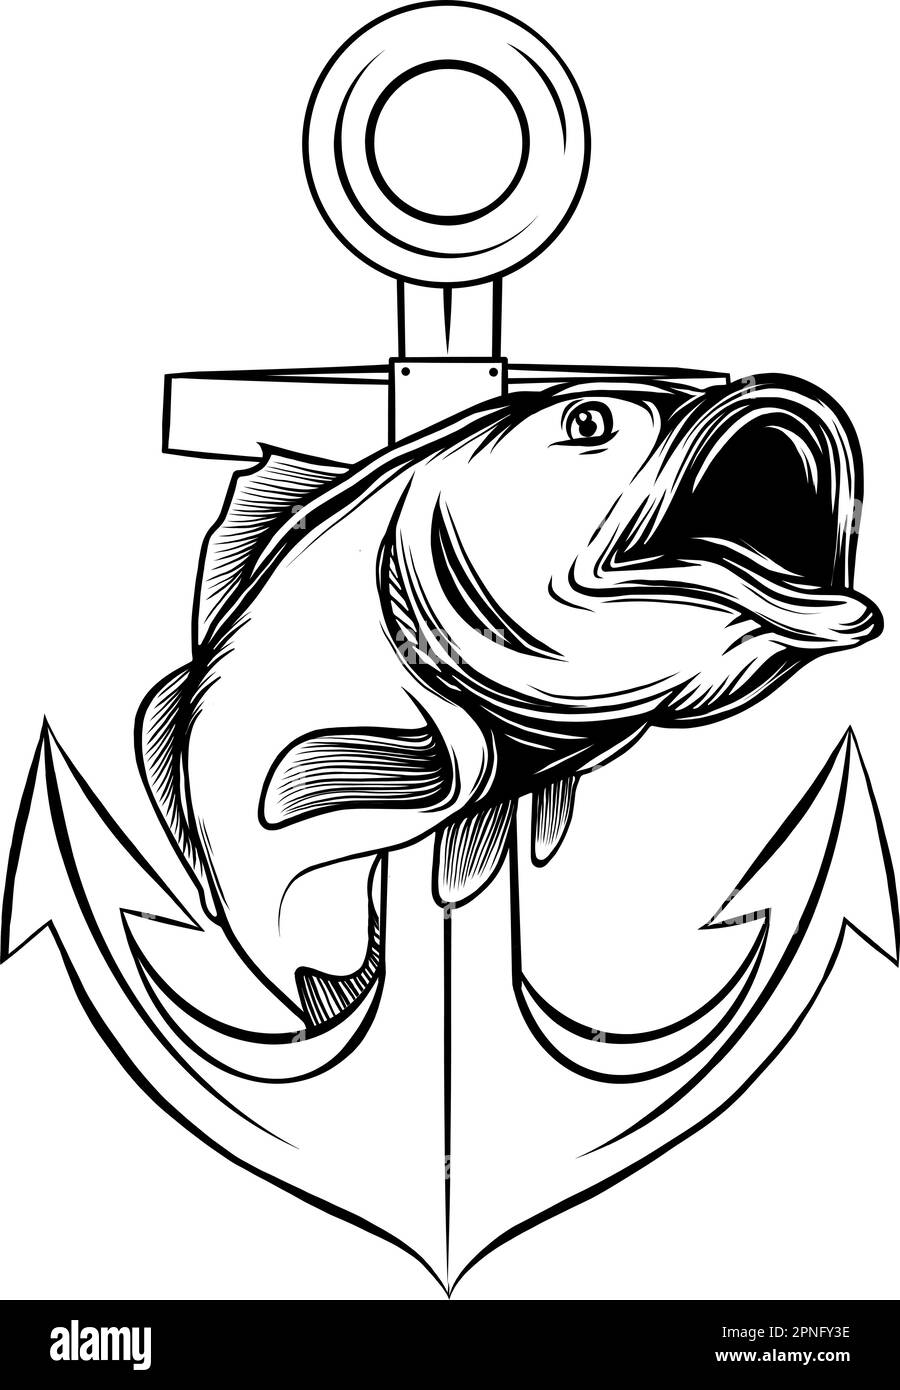 Carpe koï et emblème d'ancre. Élément monochrome avec illustration de vecteur d'onde de poisson et d'océan avec texte. Illustration de Vecteur